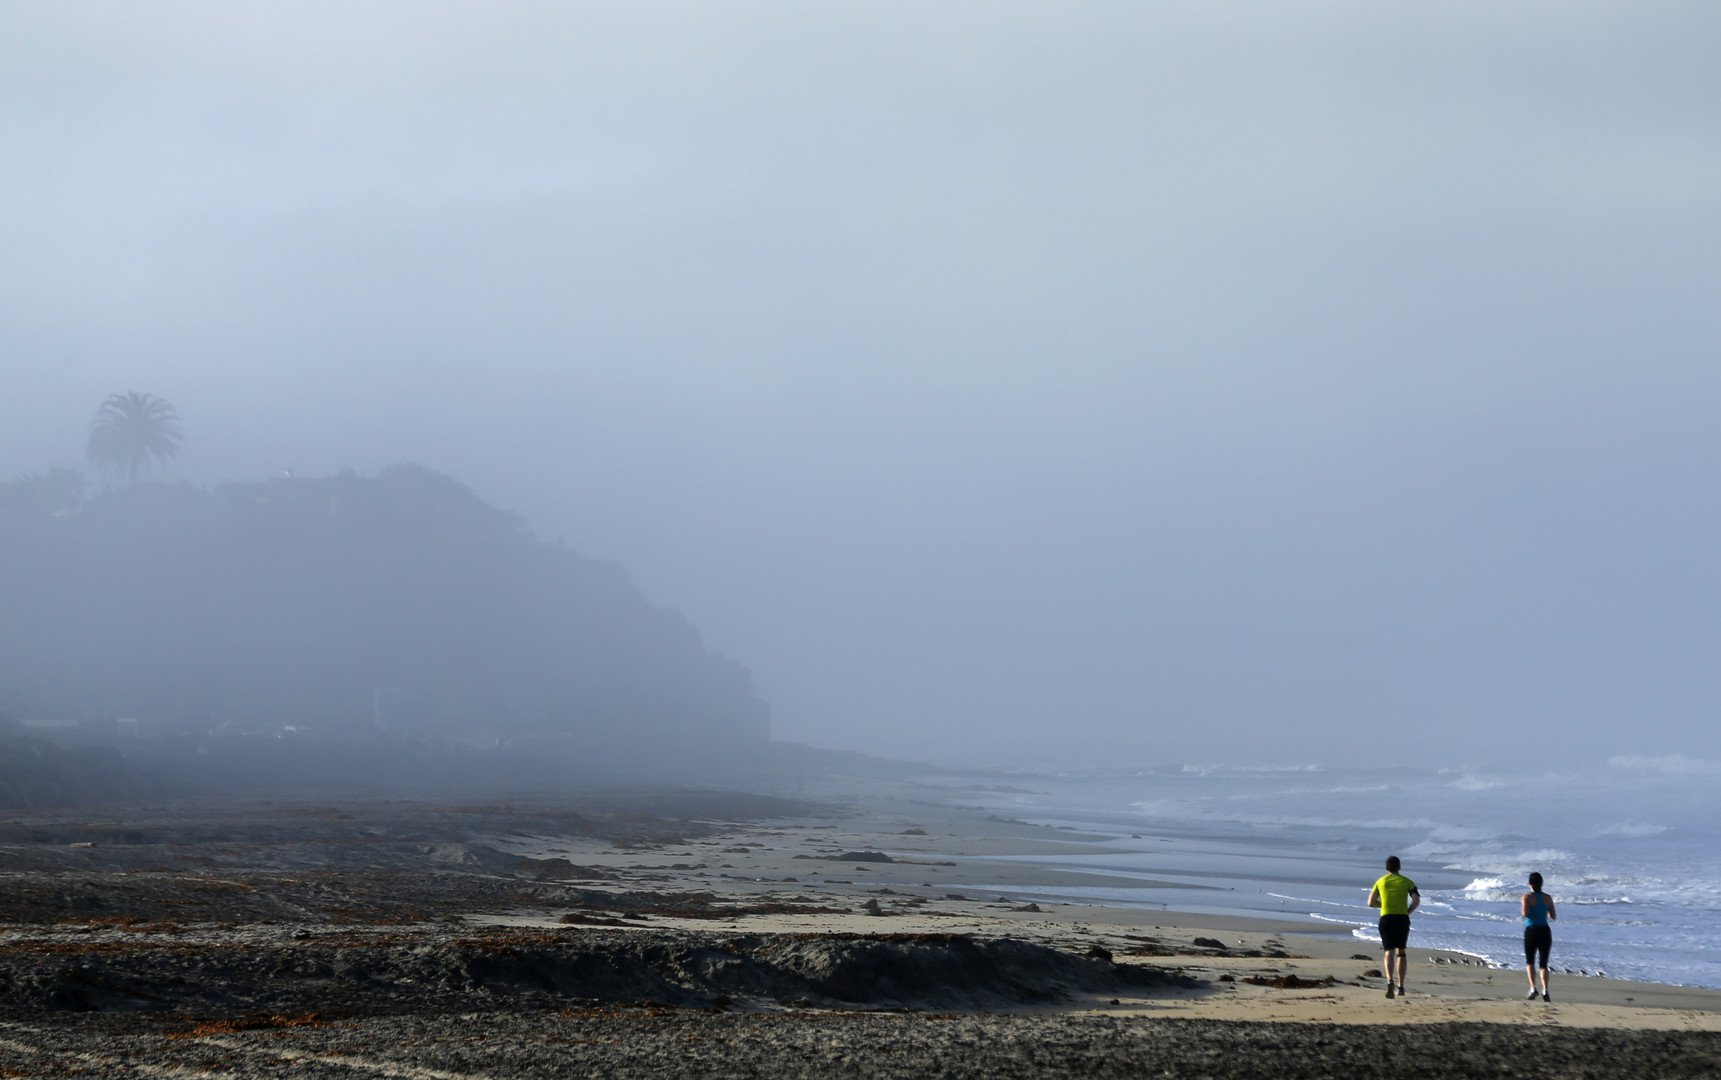  رجل وامرأة يتمتعان بنسيم البحر أثناء ممارسة رياضة الجري على شاطئ كارديف، كاليفورنيا، 17 مارس/آذار 